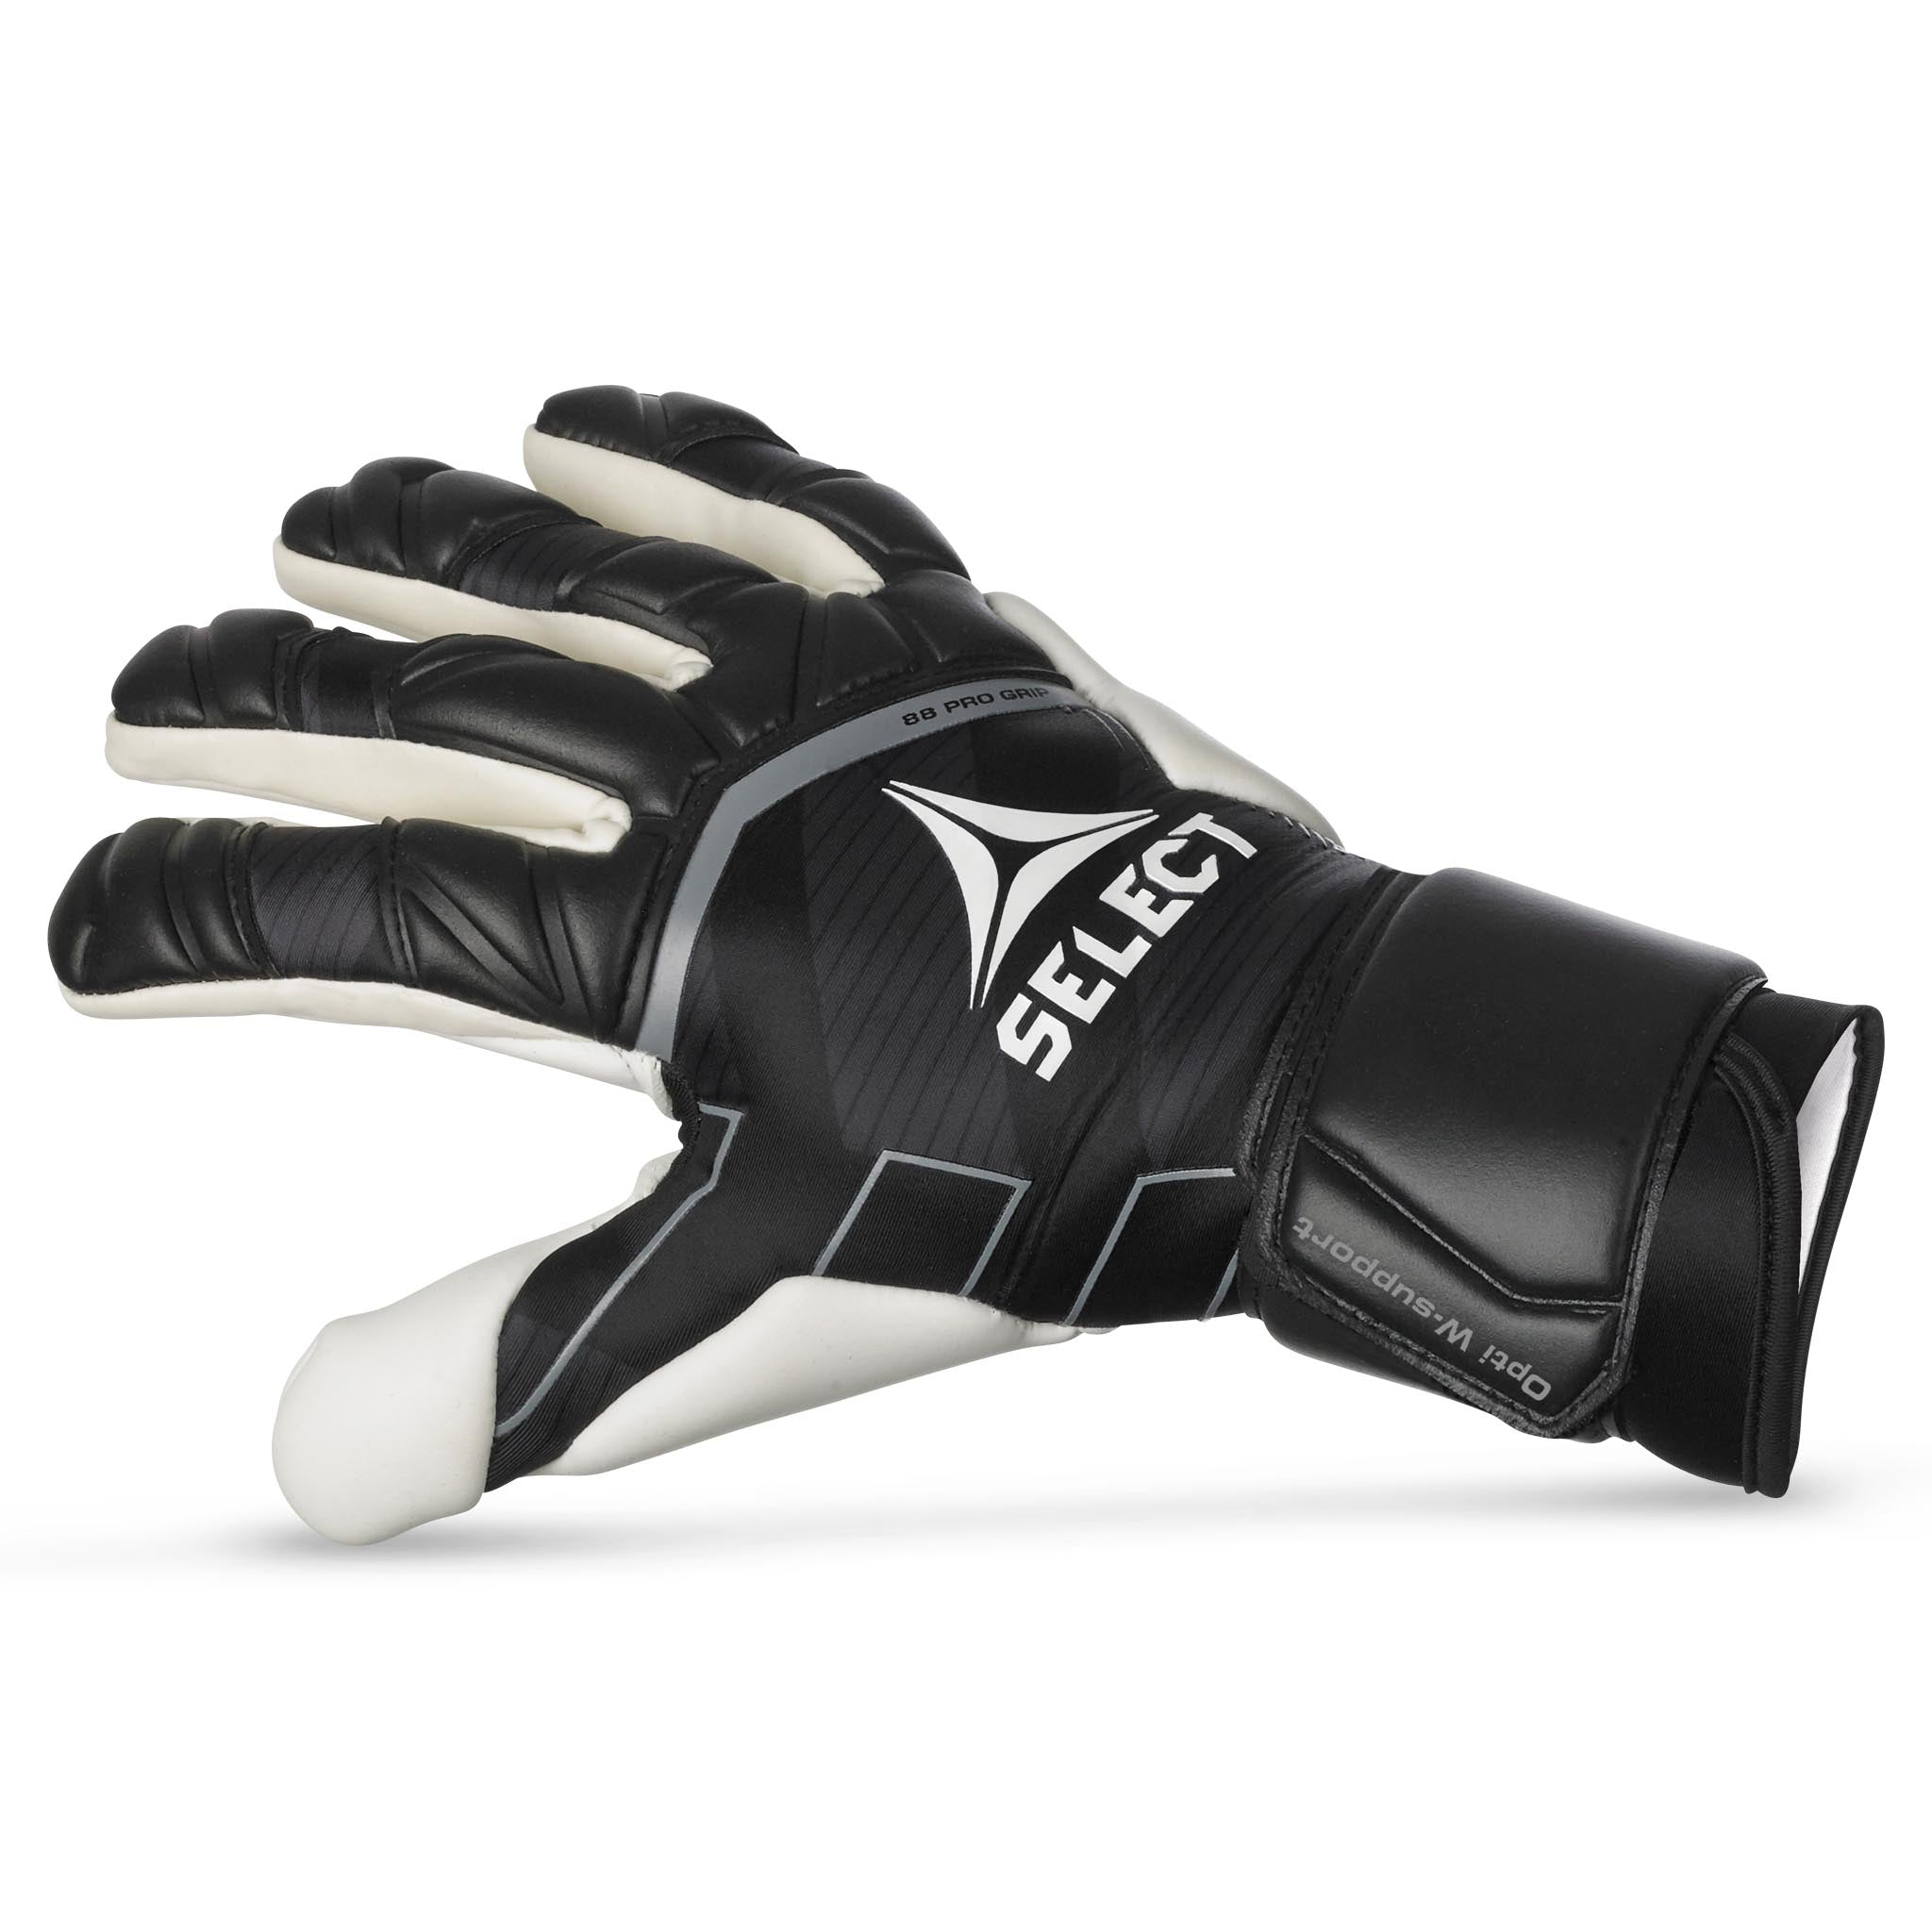 Goalkeeper gloves - 88 Pro Grip #colour_black/white